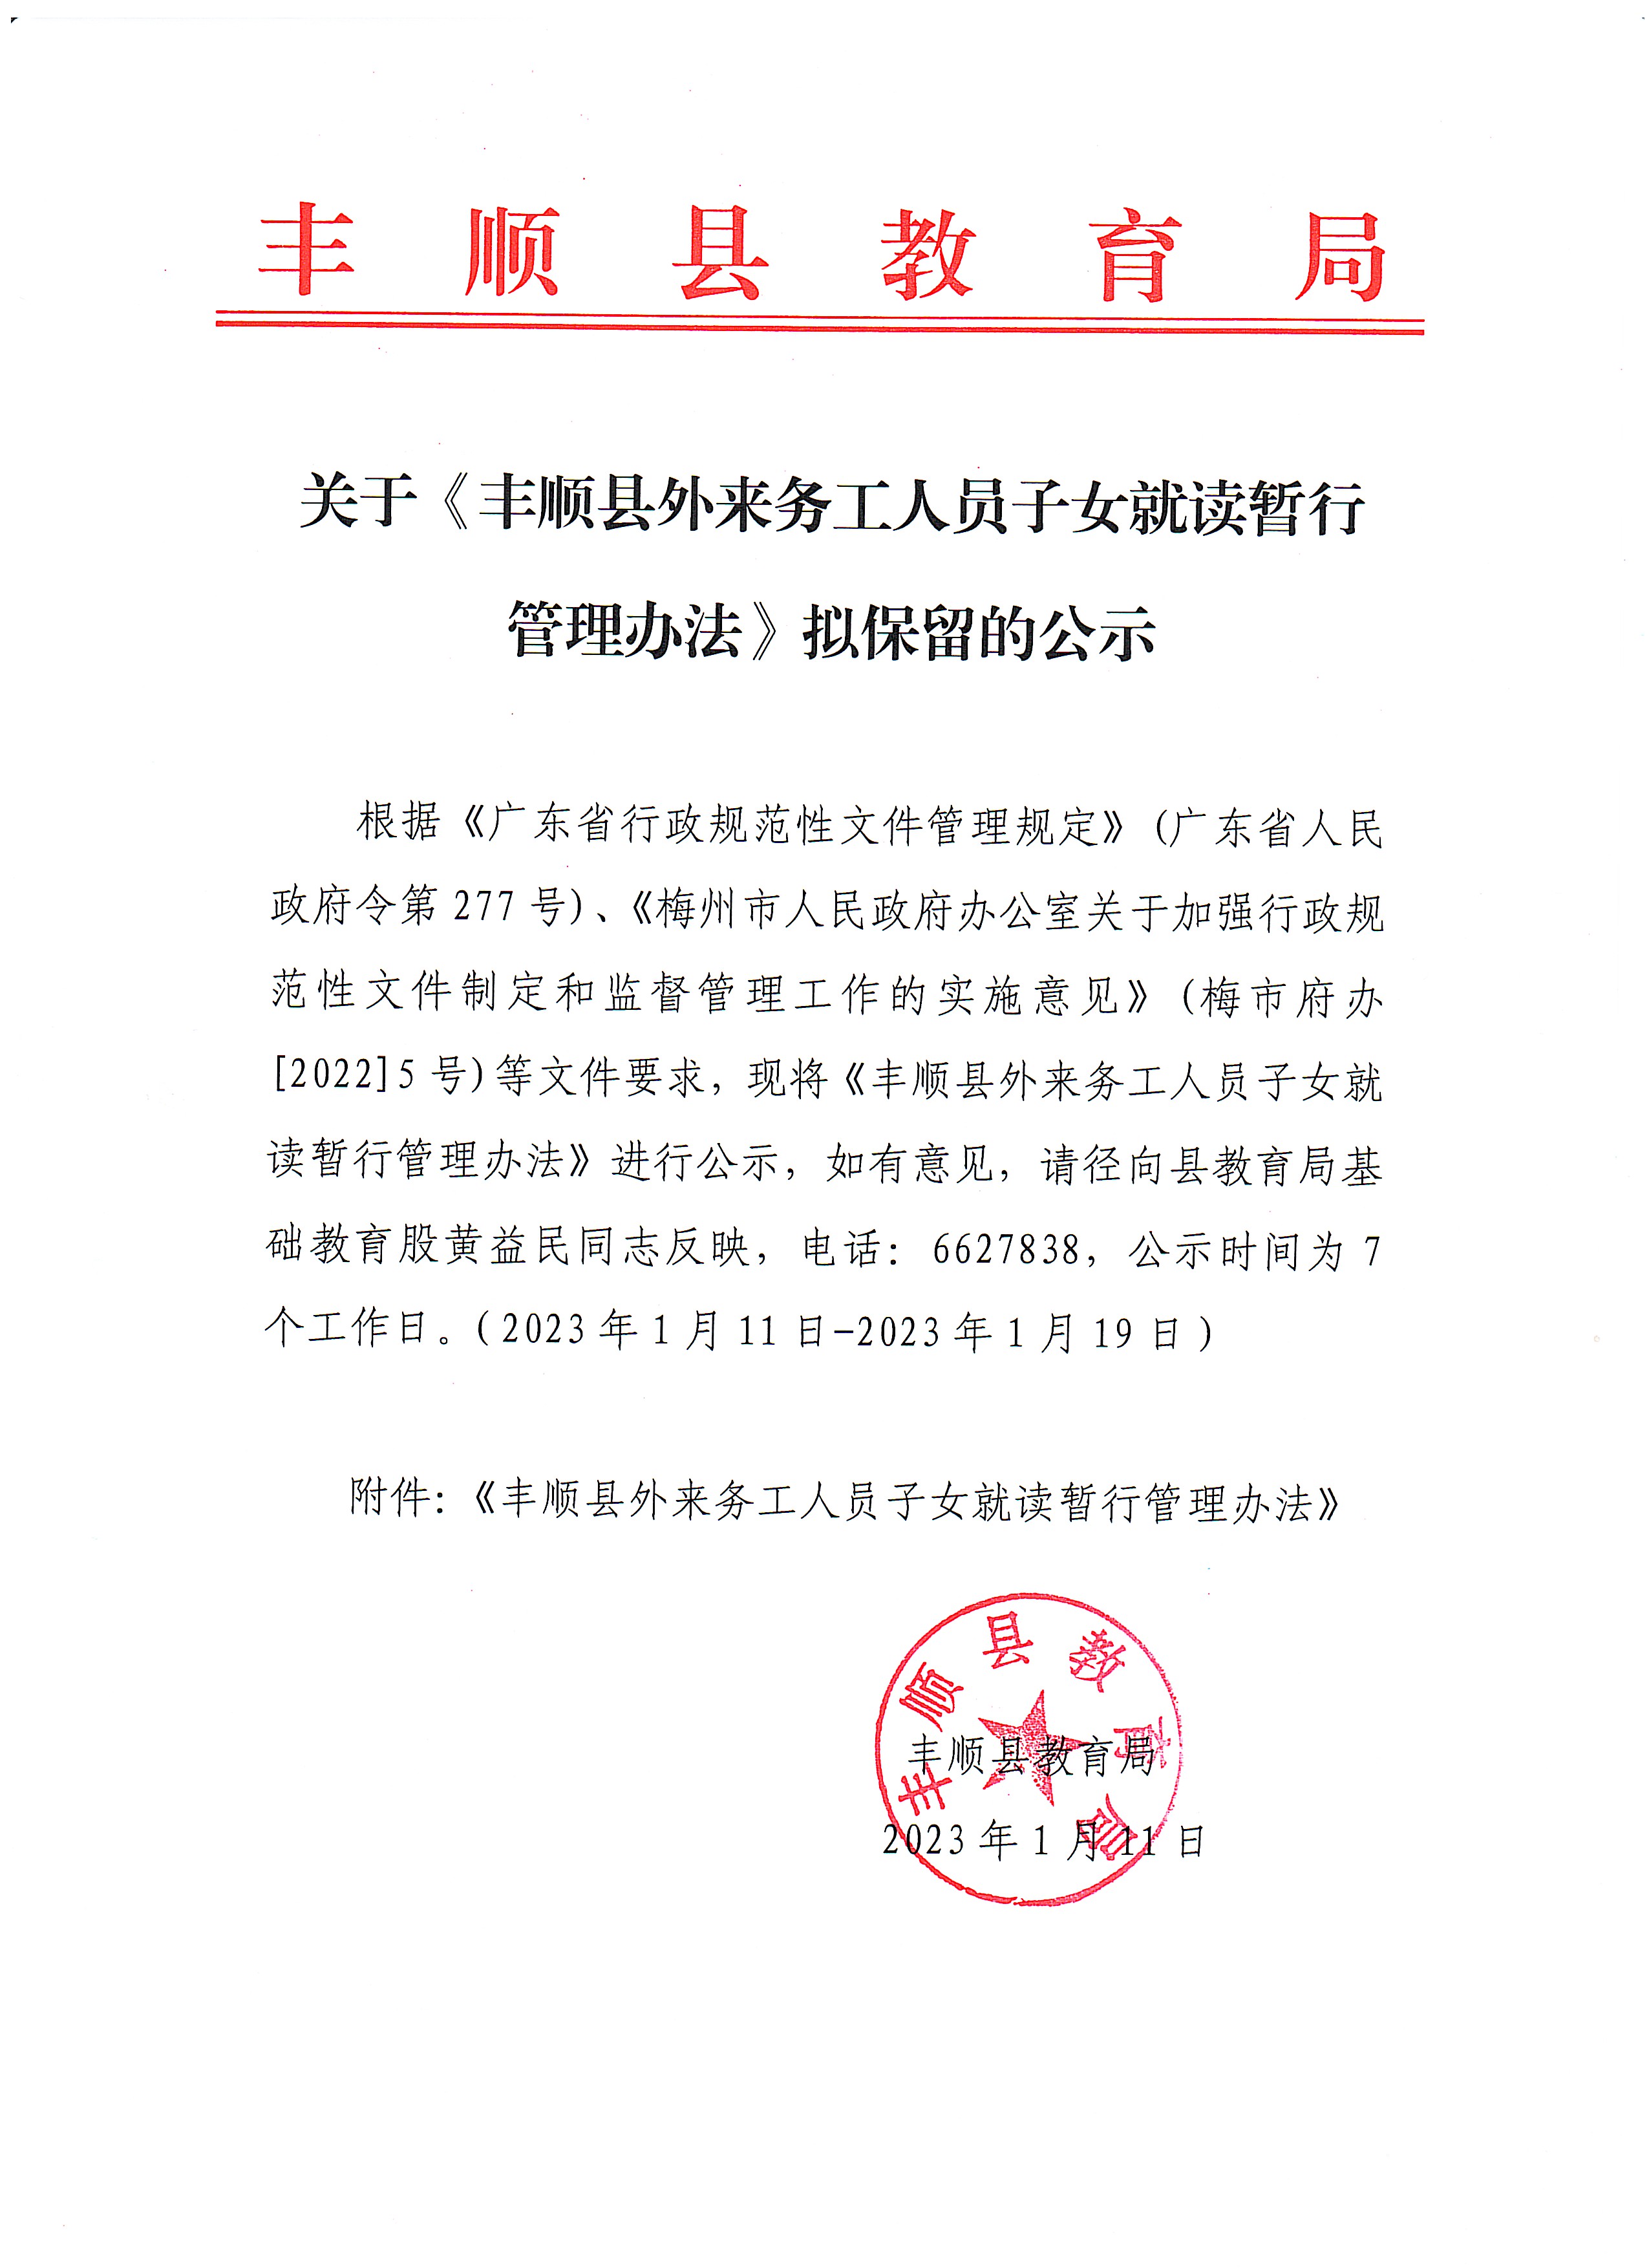 关于《丰顺县外来务工人员子女就读暂行管理办法》拟保留的公示.jpg